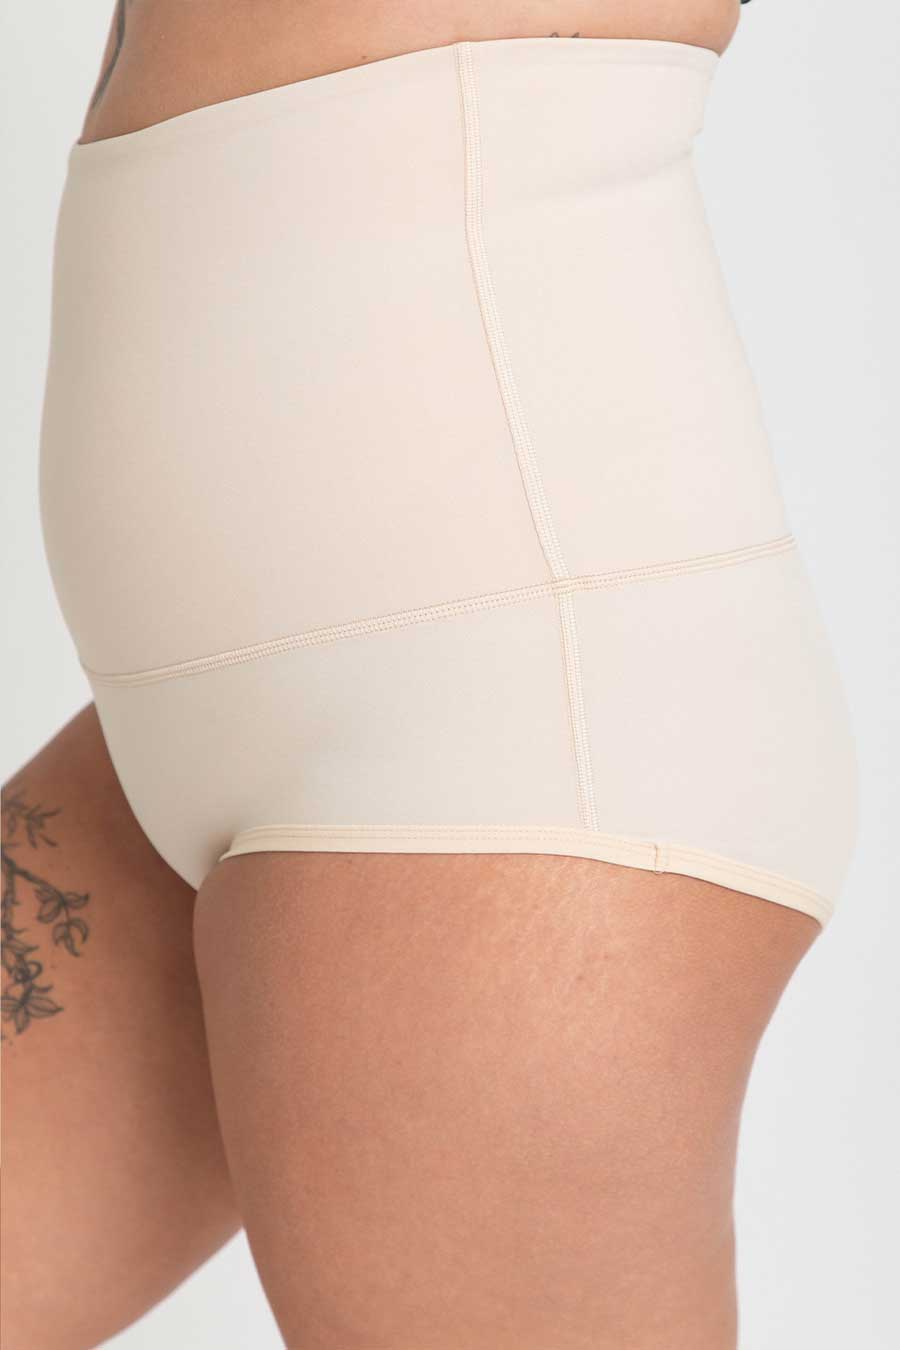 Postpartum Underwear Australia, Recovery Briefs